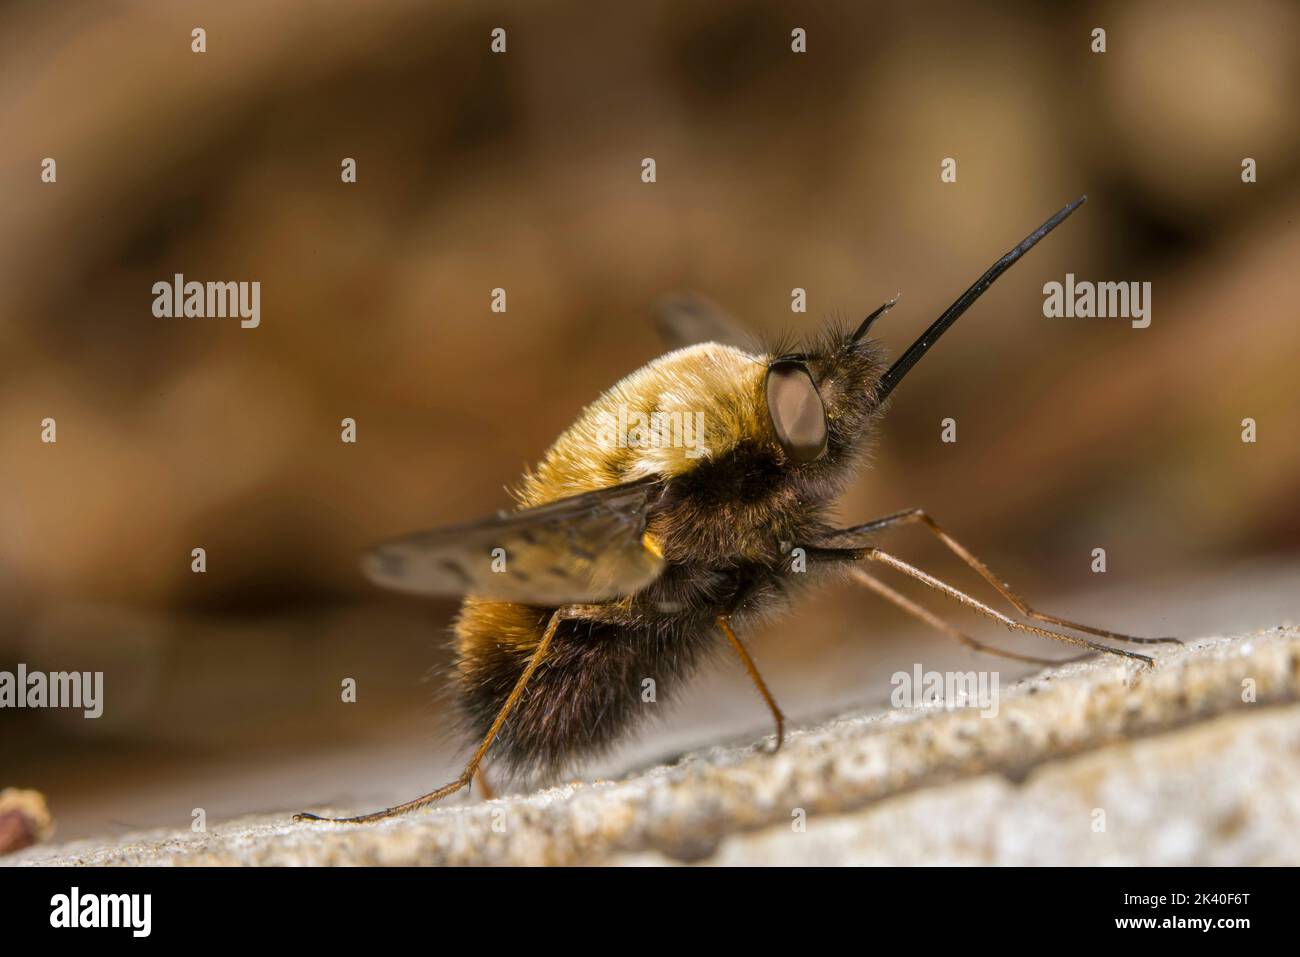 Mosca punteada de la abeja (Bombylius discolor), se asienta sobre madera muerta, Alemania Foto de stock